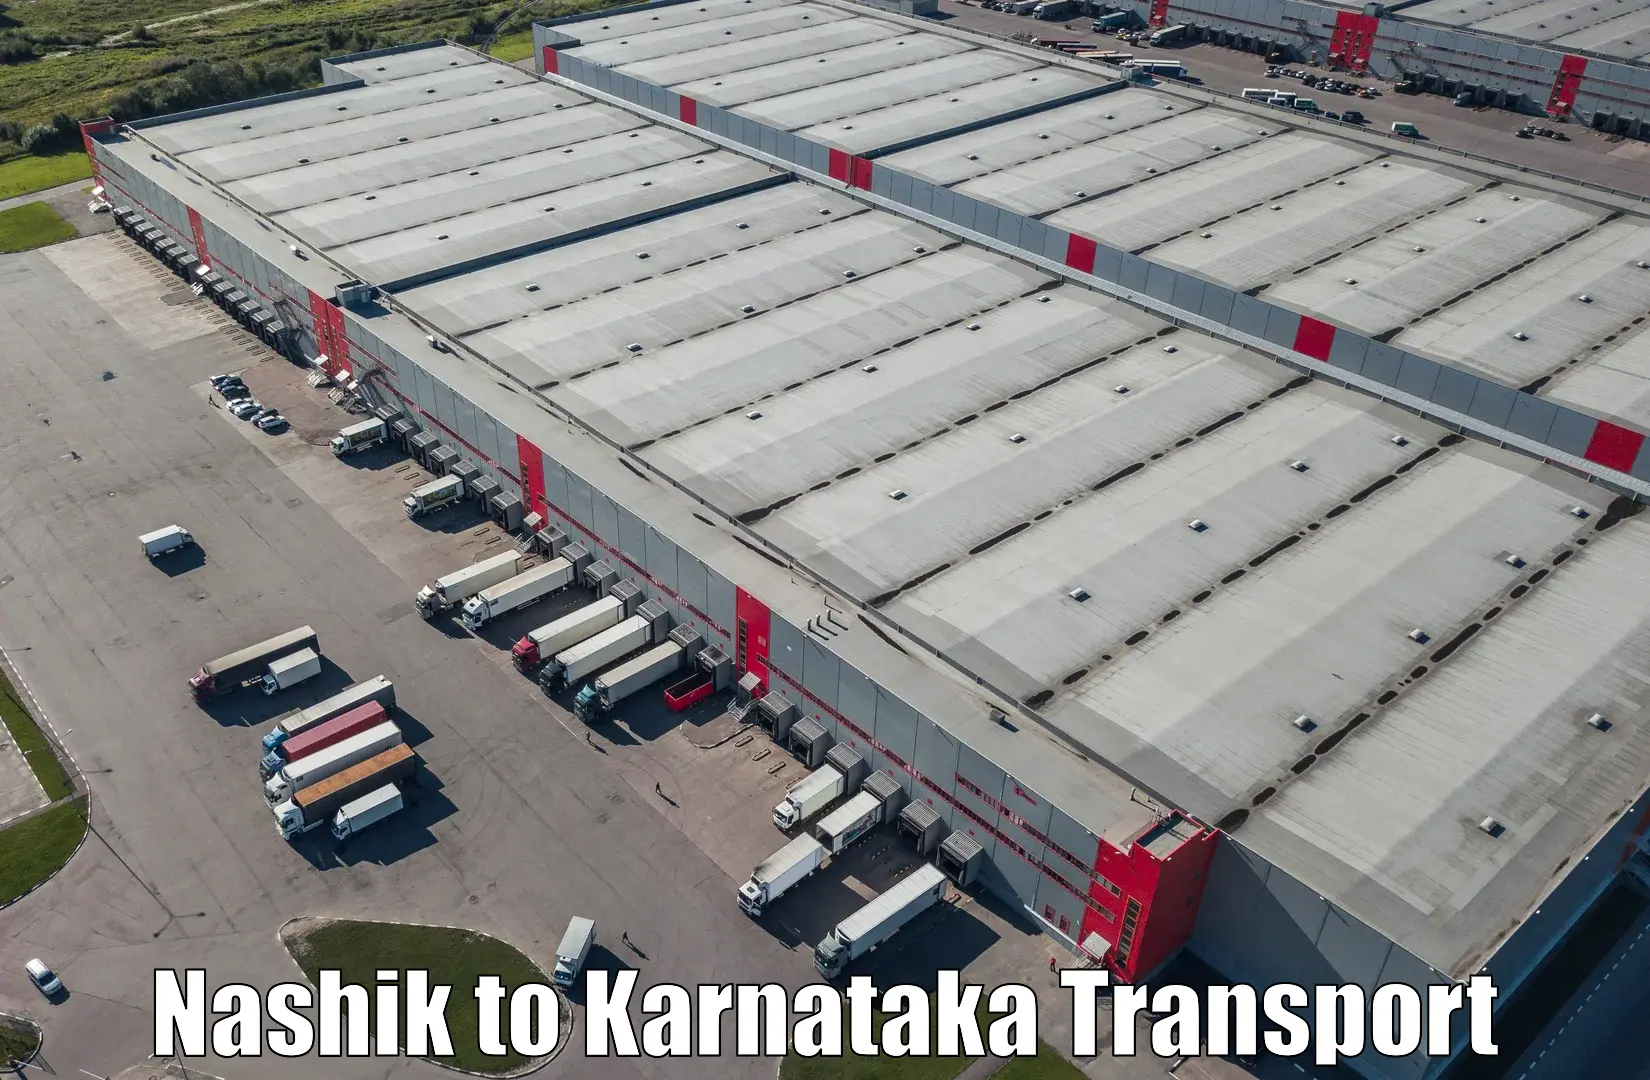 Nationwide transport services Nashik to Mangalore